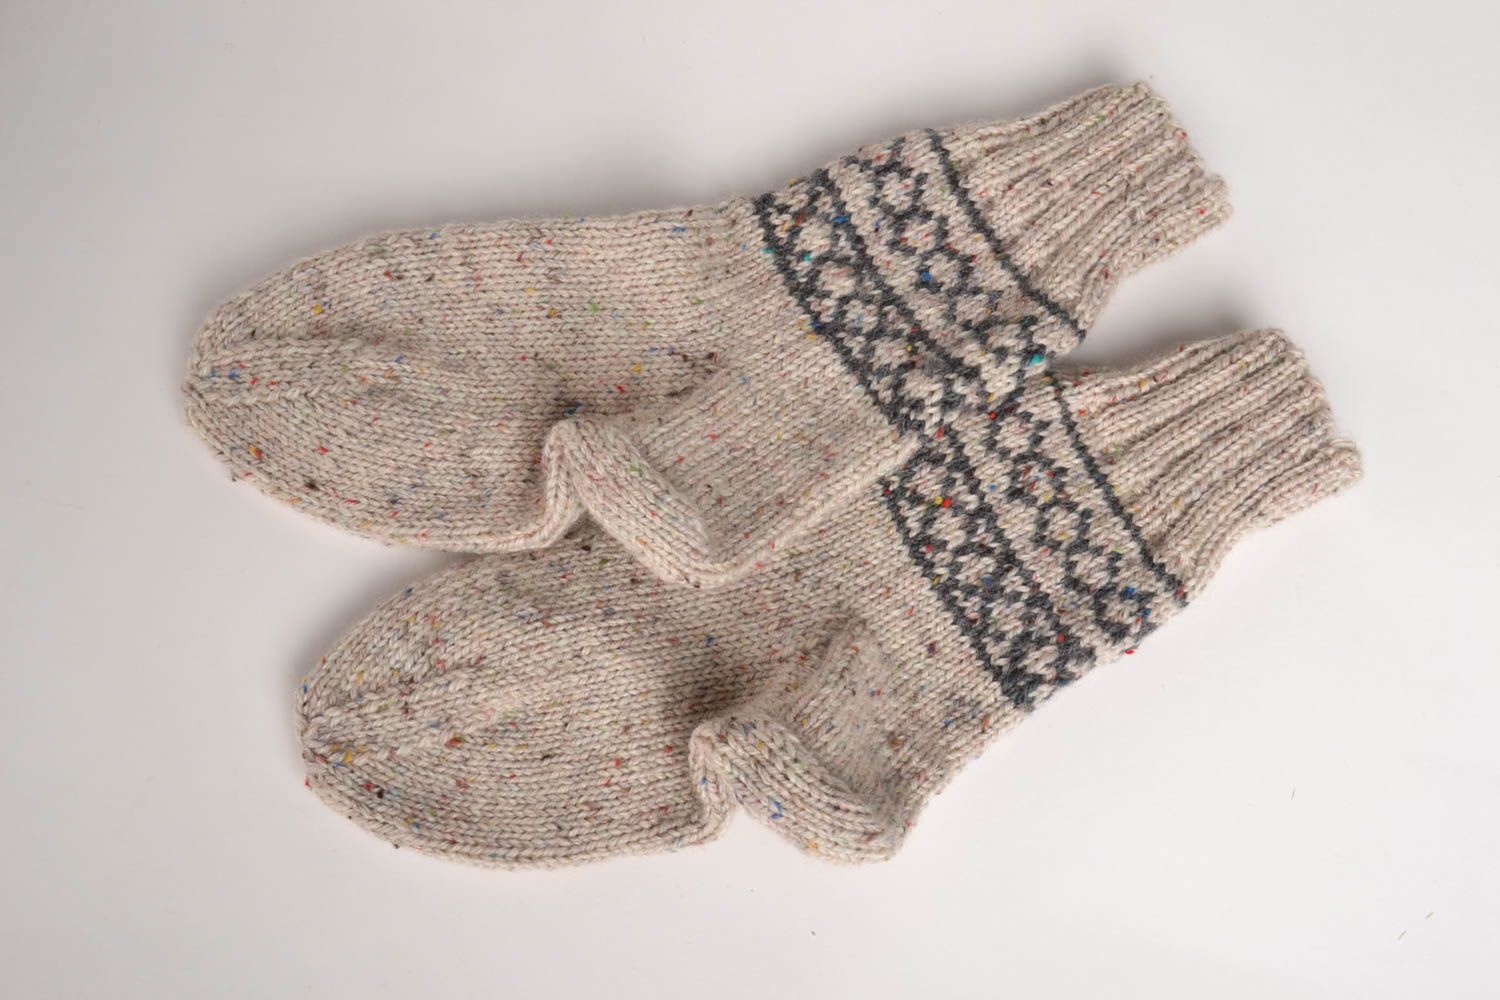 Handmade wool socks knitted socks warm woolen socks best gifts for men photo 2